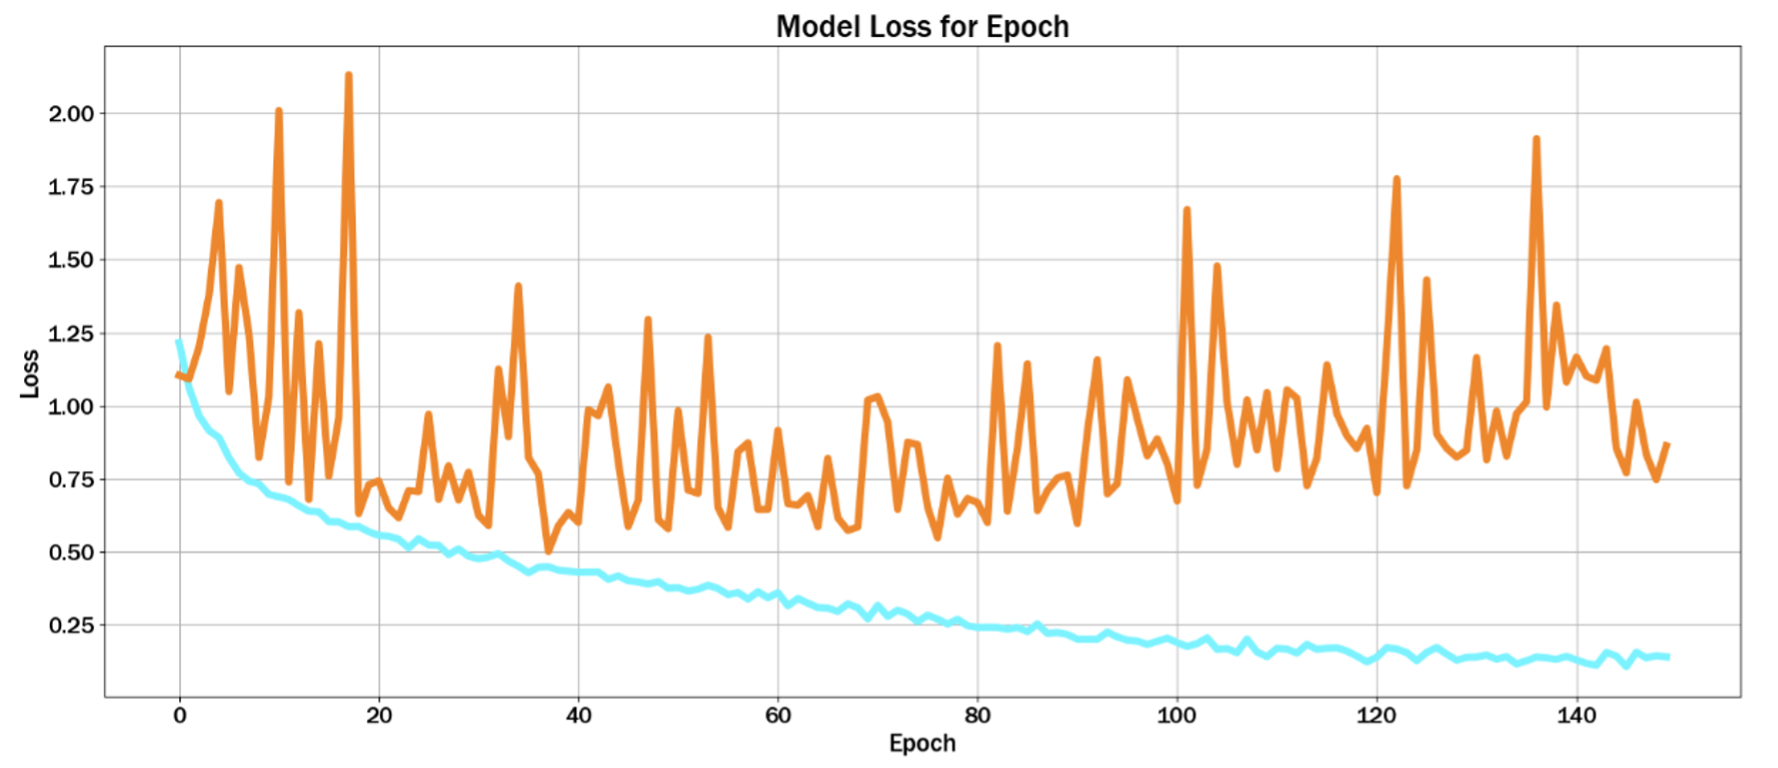 Model Loss for Epochs